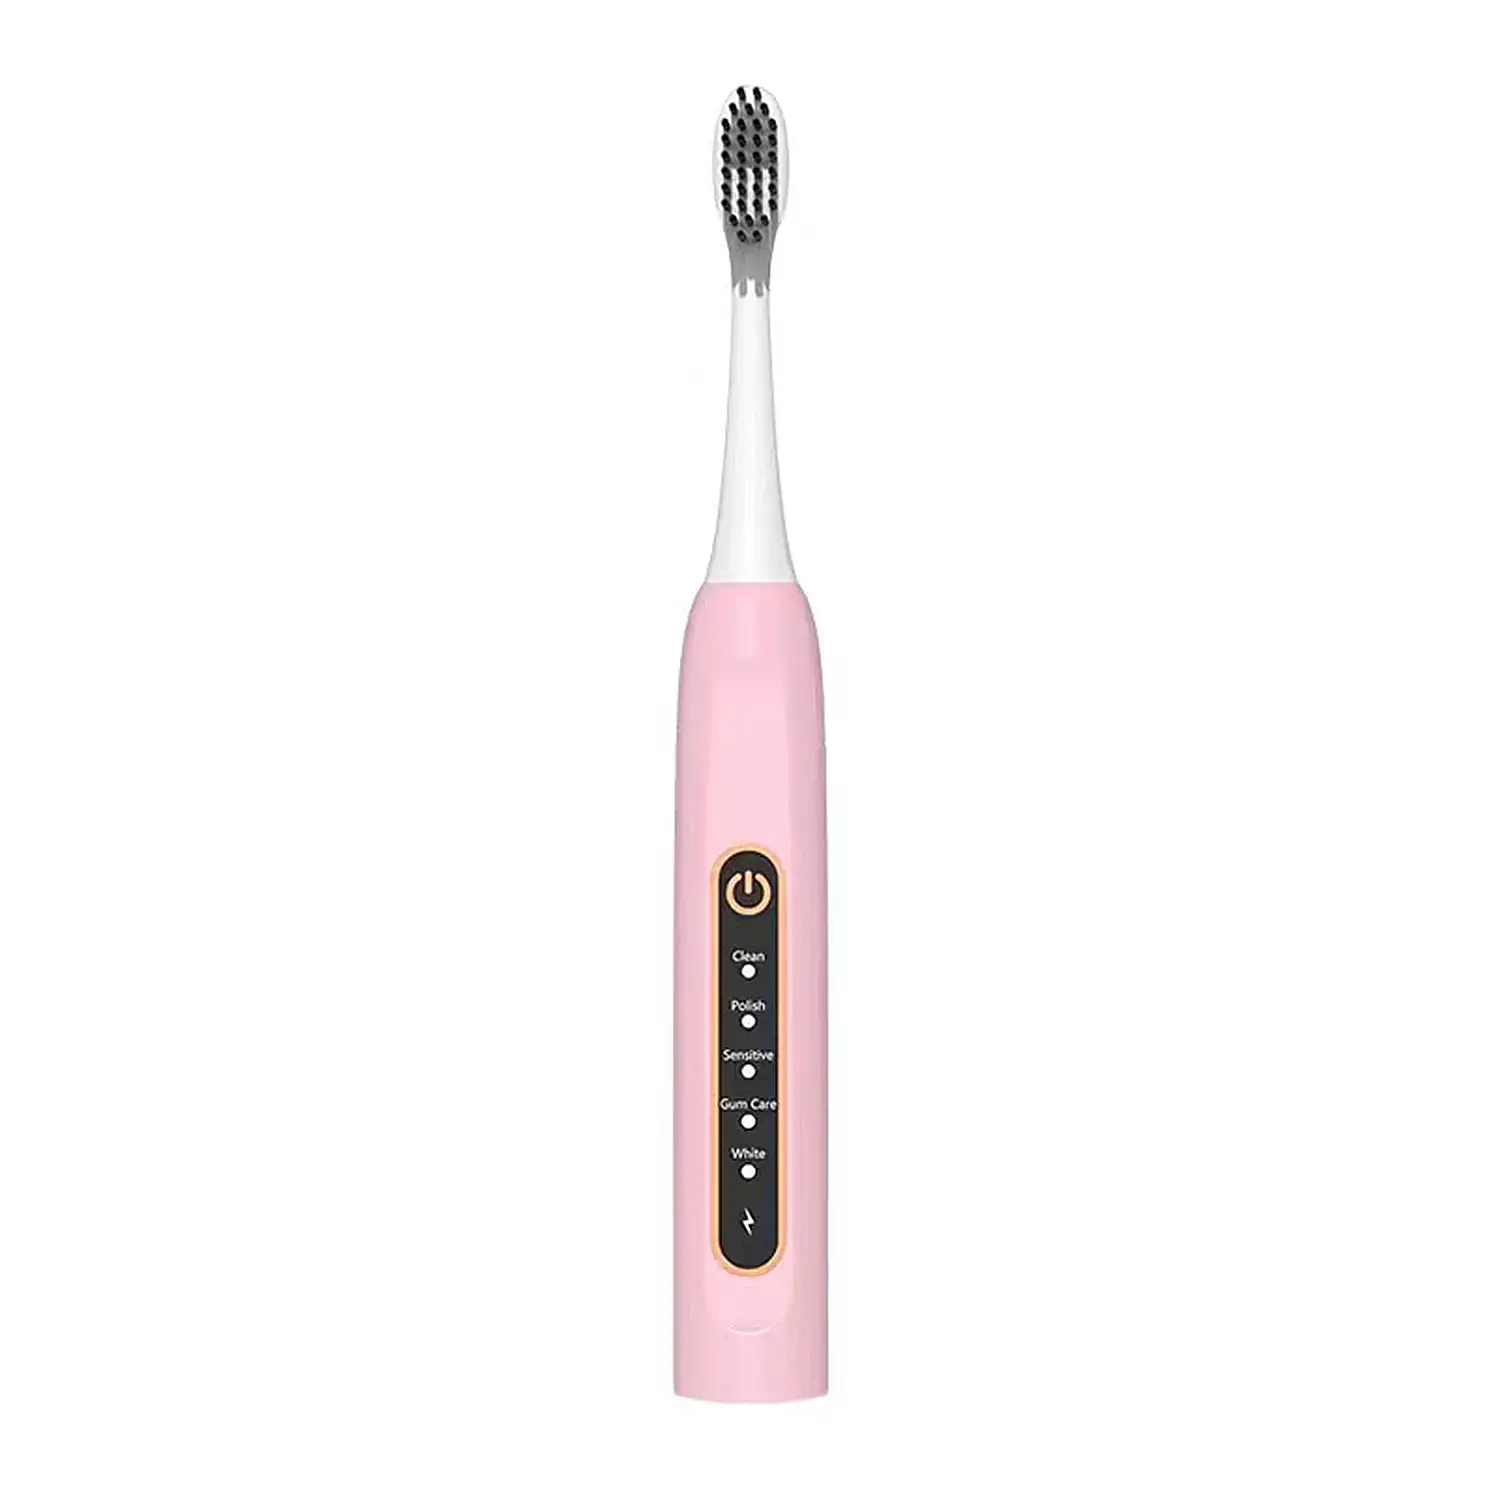 Cepillo de dientes con forma de lápiz para adultos con 5 funciones para tu salud y belleza bucal.
(Modelo recargable)